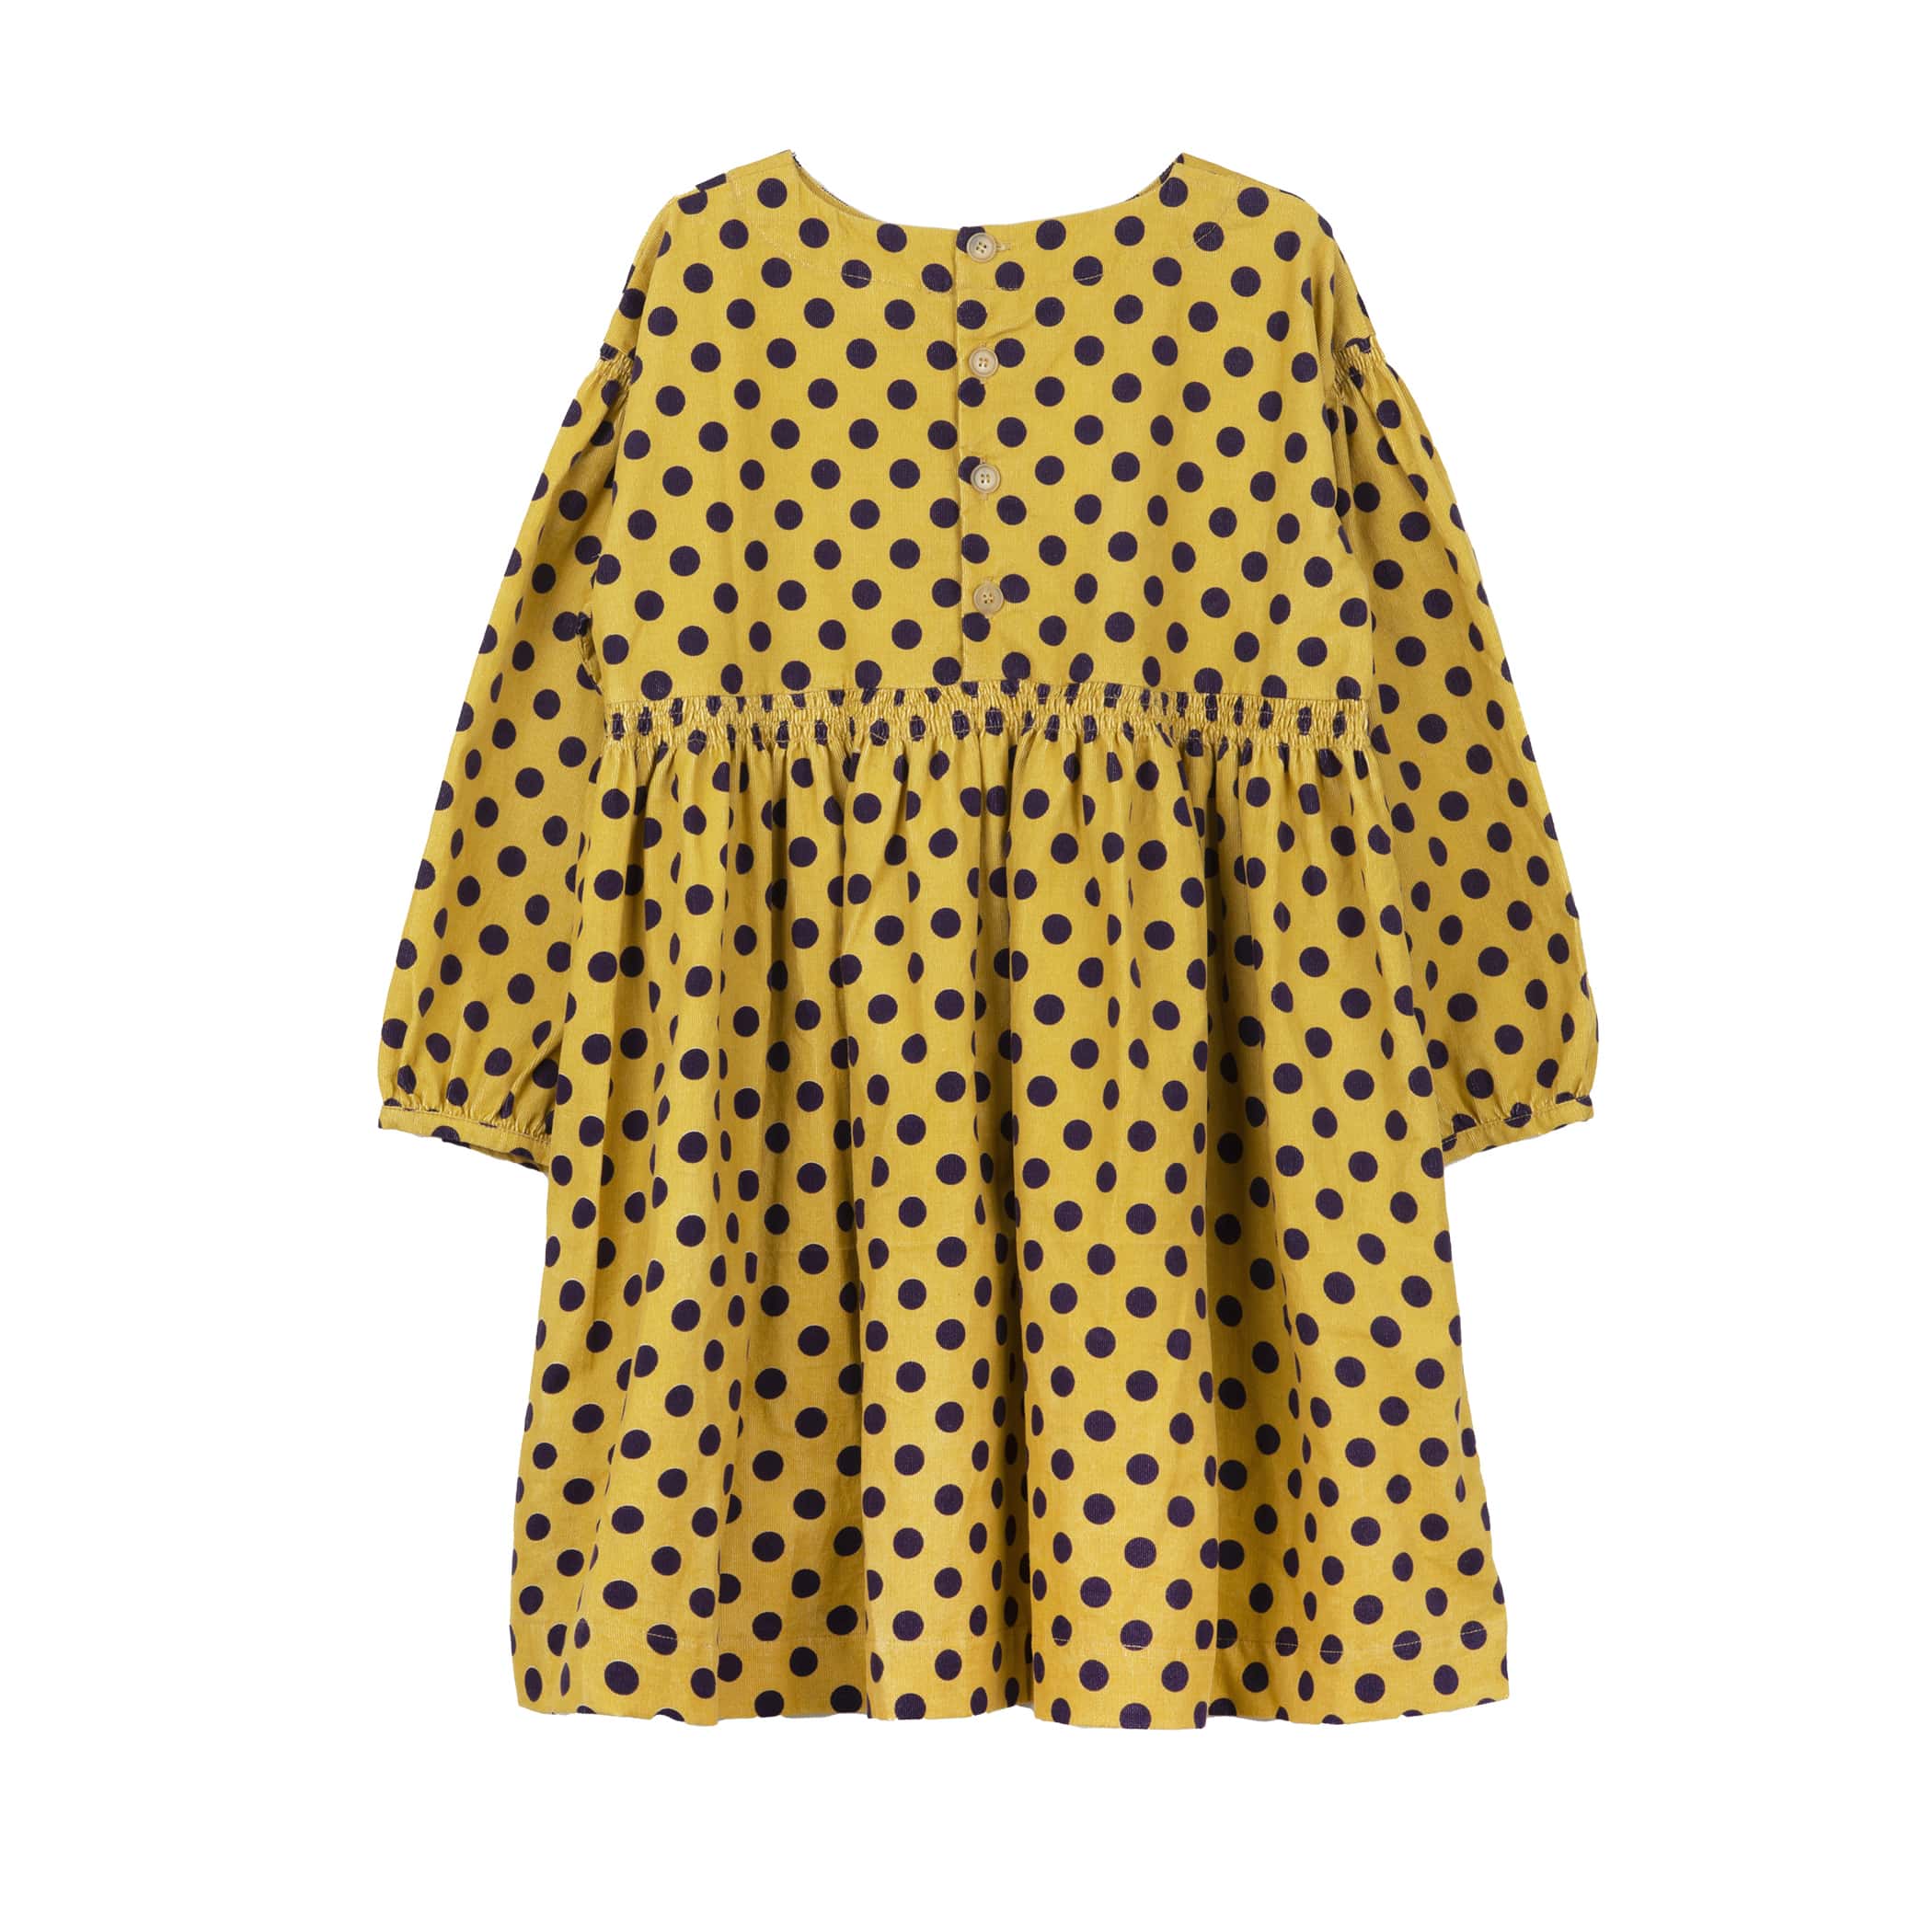 Girls Yellow Dots Cotton Dress